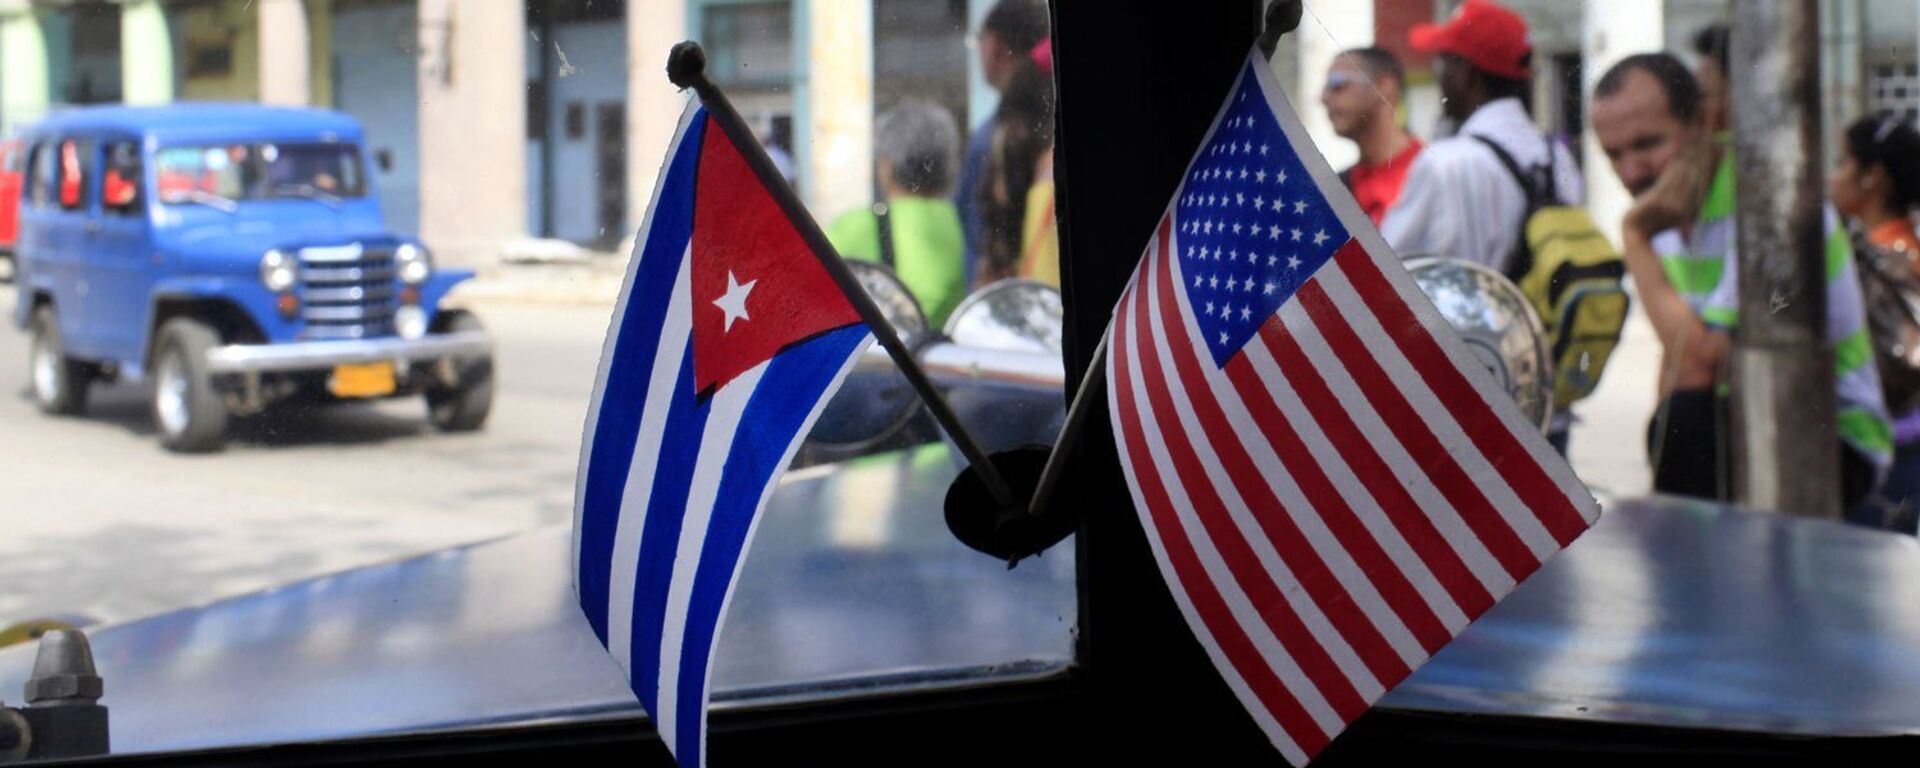 Banderas de EEUU y Cuba - Sputnik Mundo, 1920, 23.07.2021